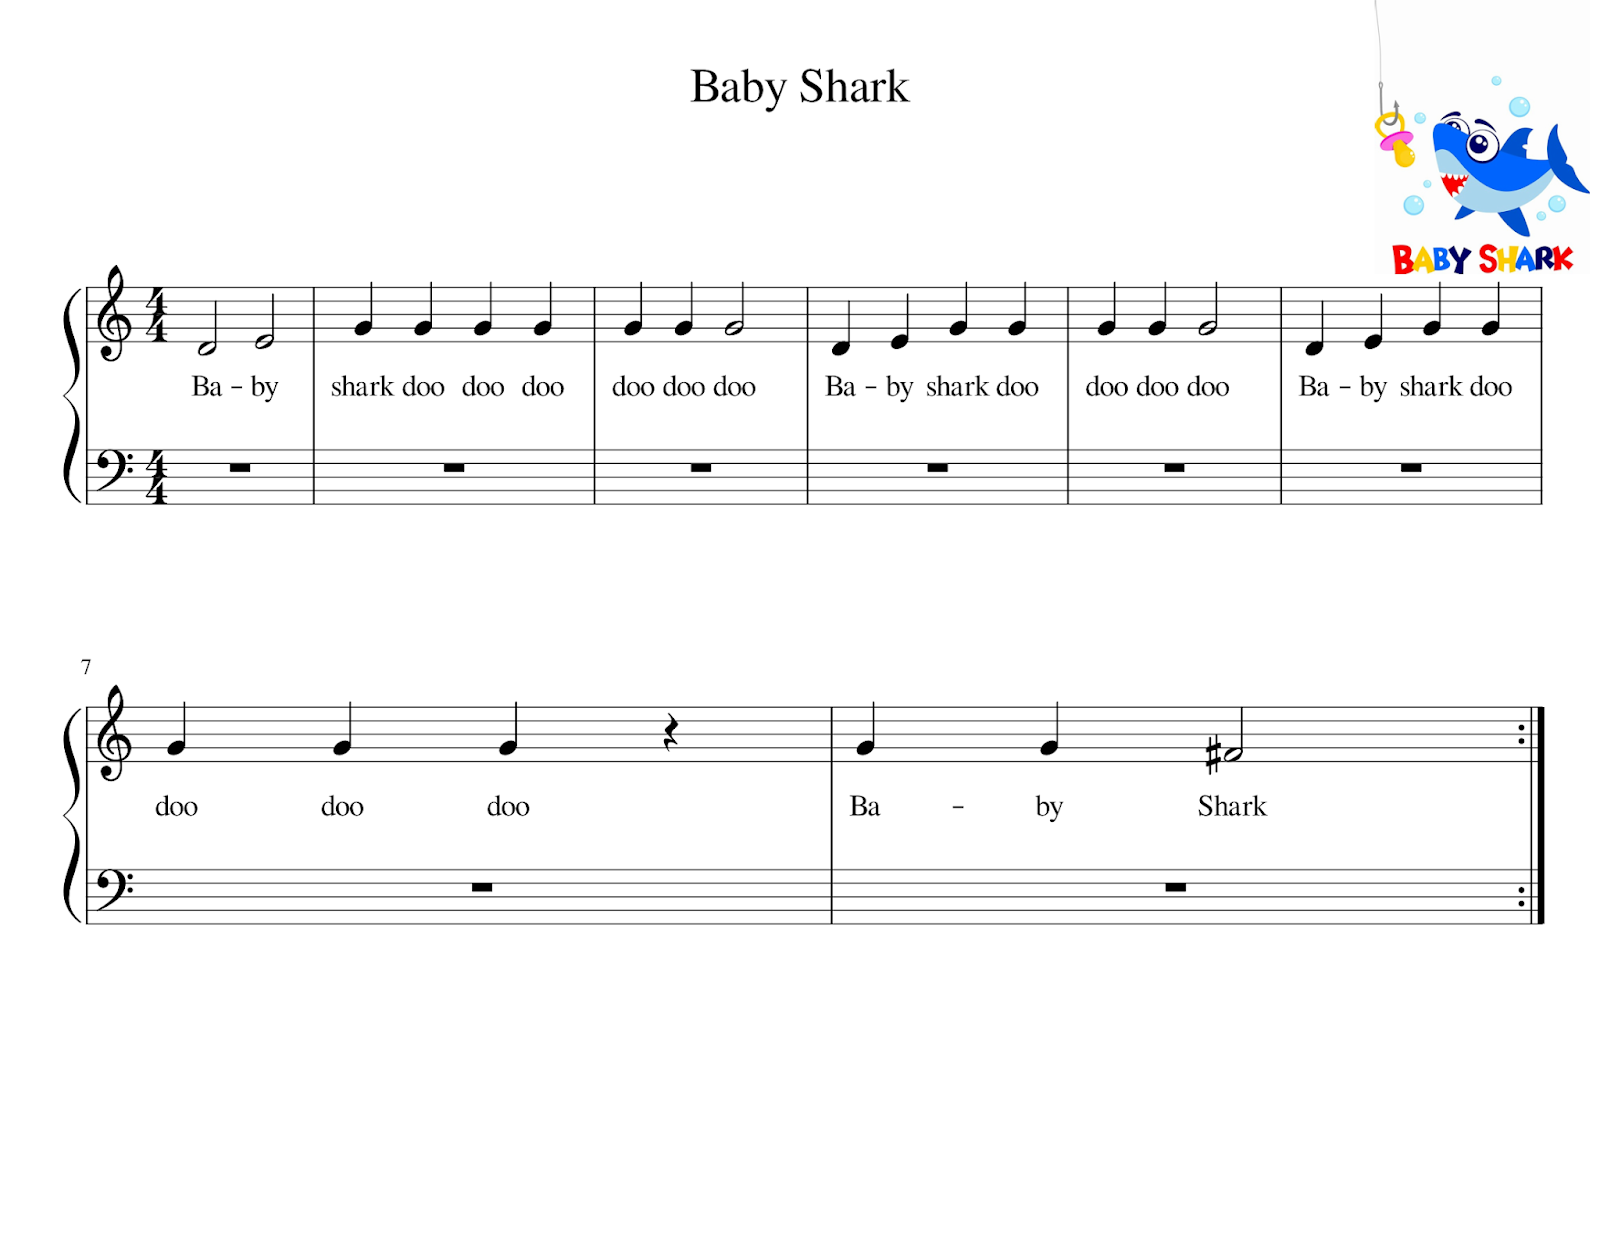 Baby Shark (Piano Tutorial) #babysharkpiano #babyshark #easypianotutor, baby shark piano